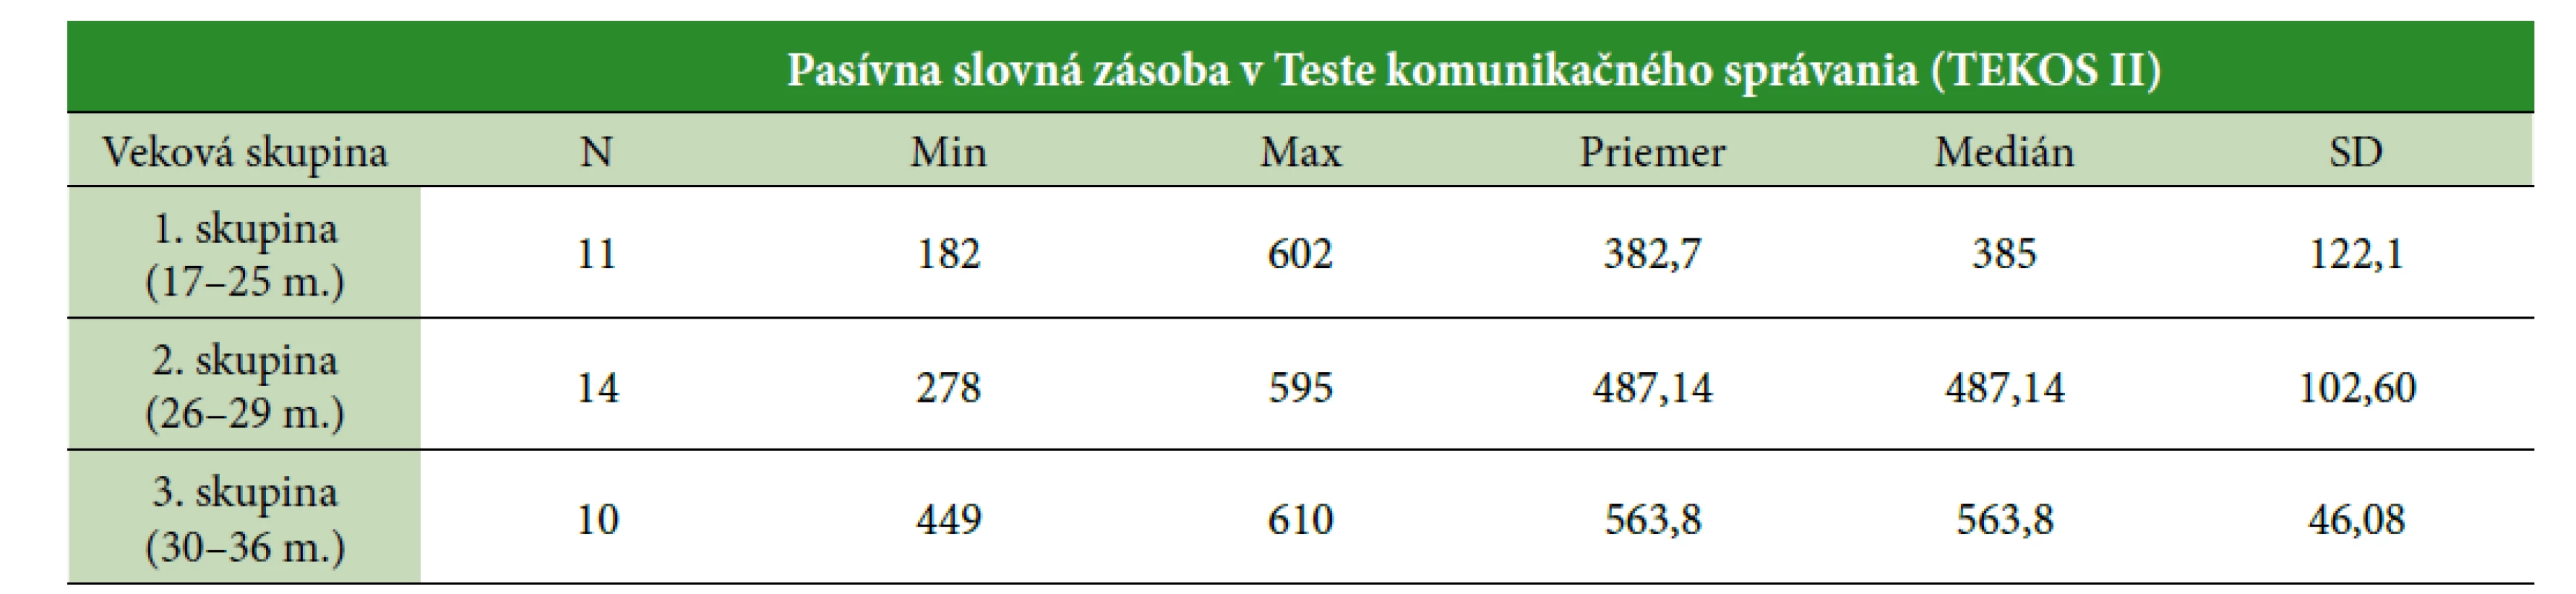 Deskriptívna štatistika výkonov v nástroji TEKOS II